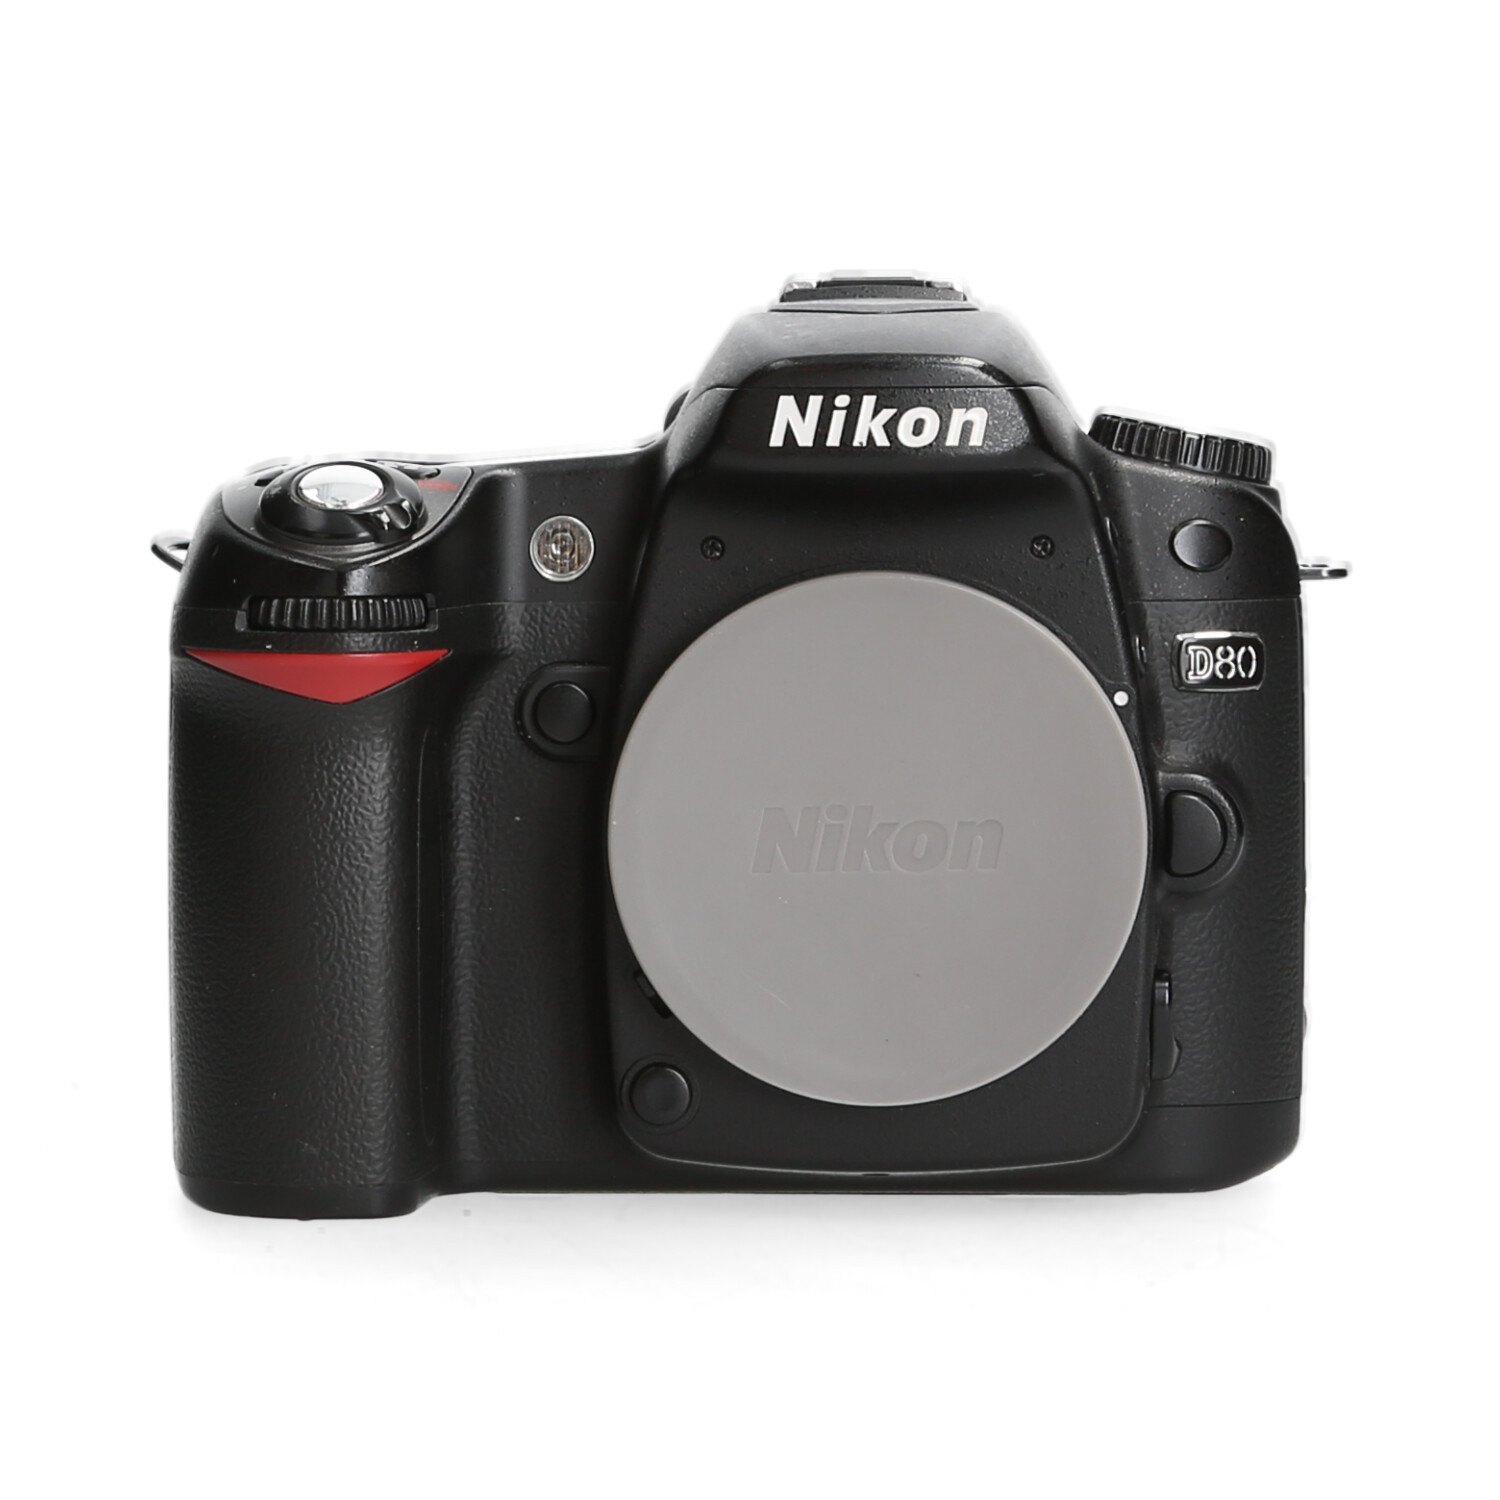 Nikon Nikon D80 - 14.210 kliks